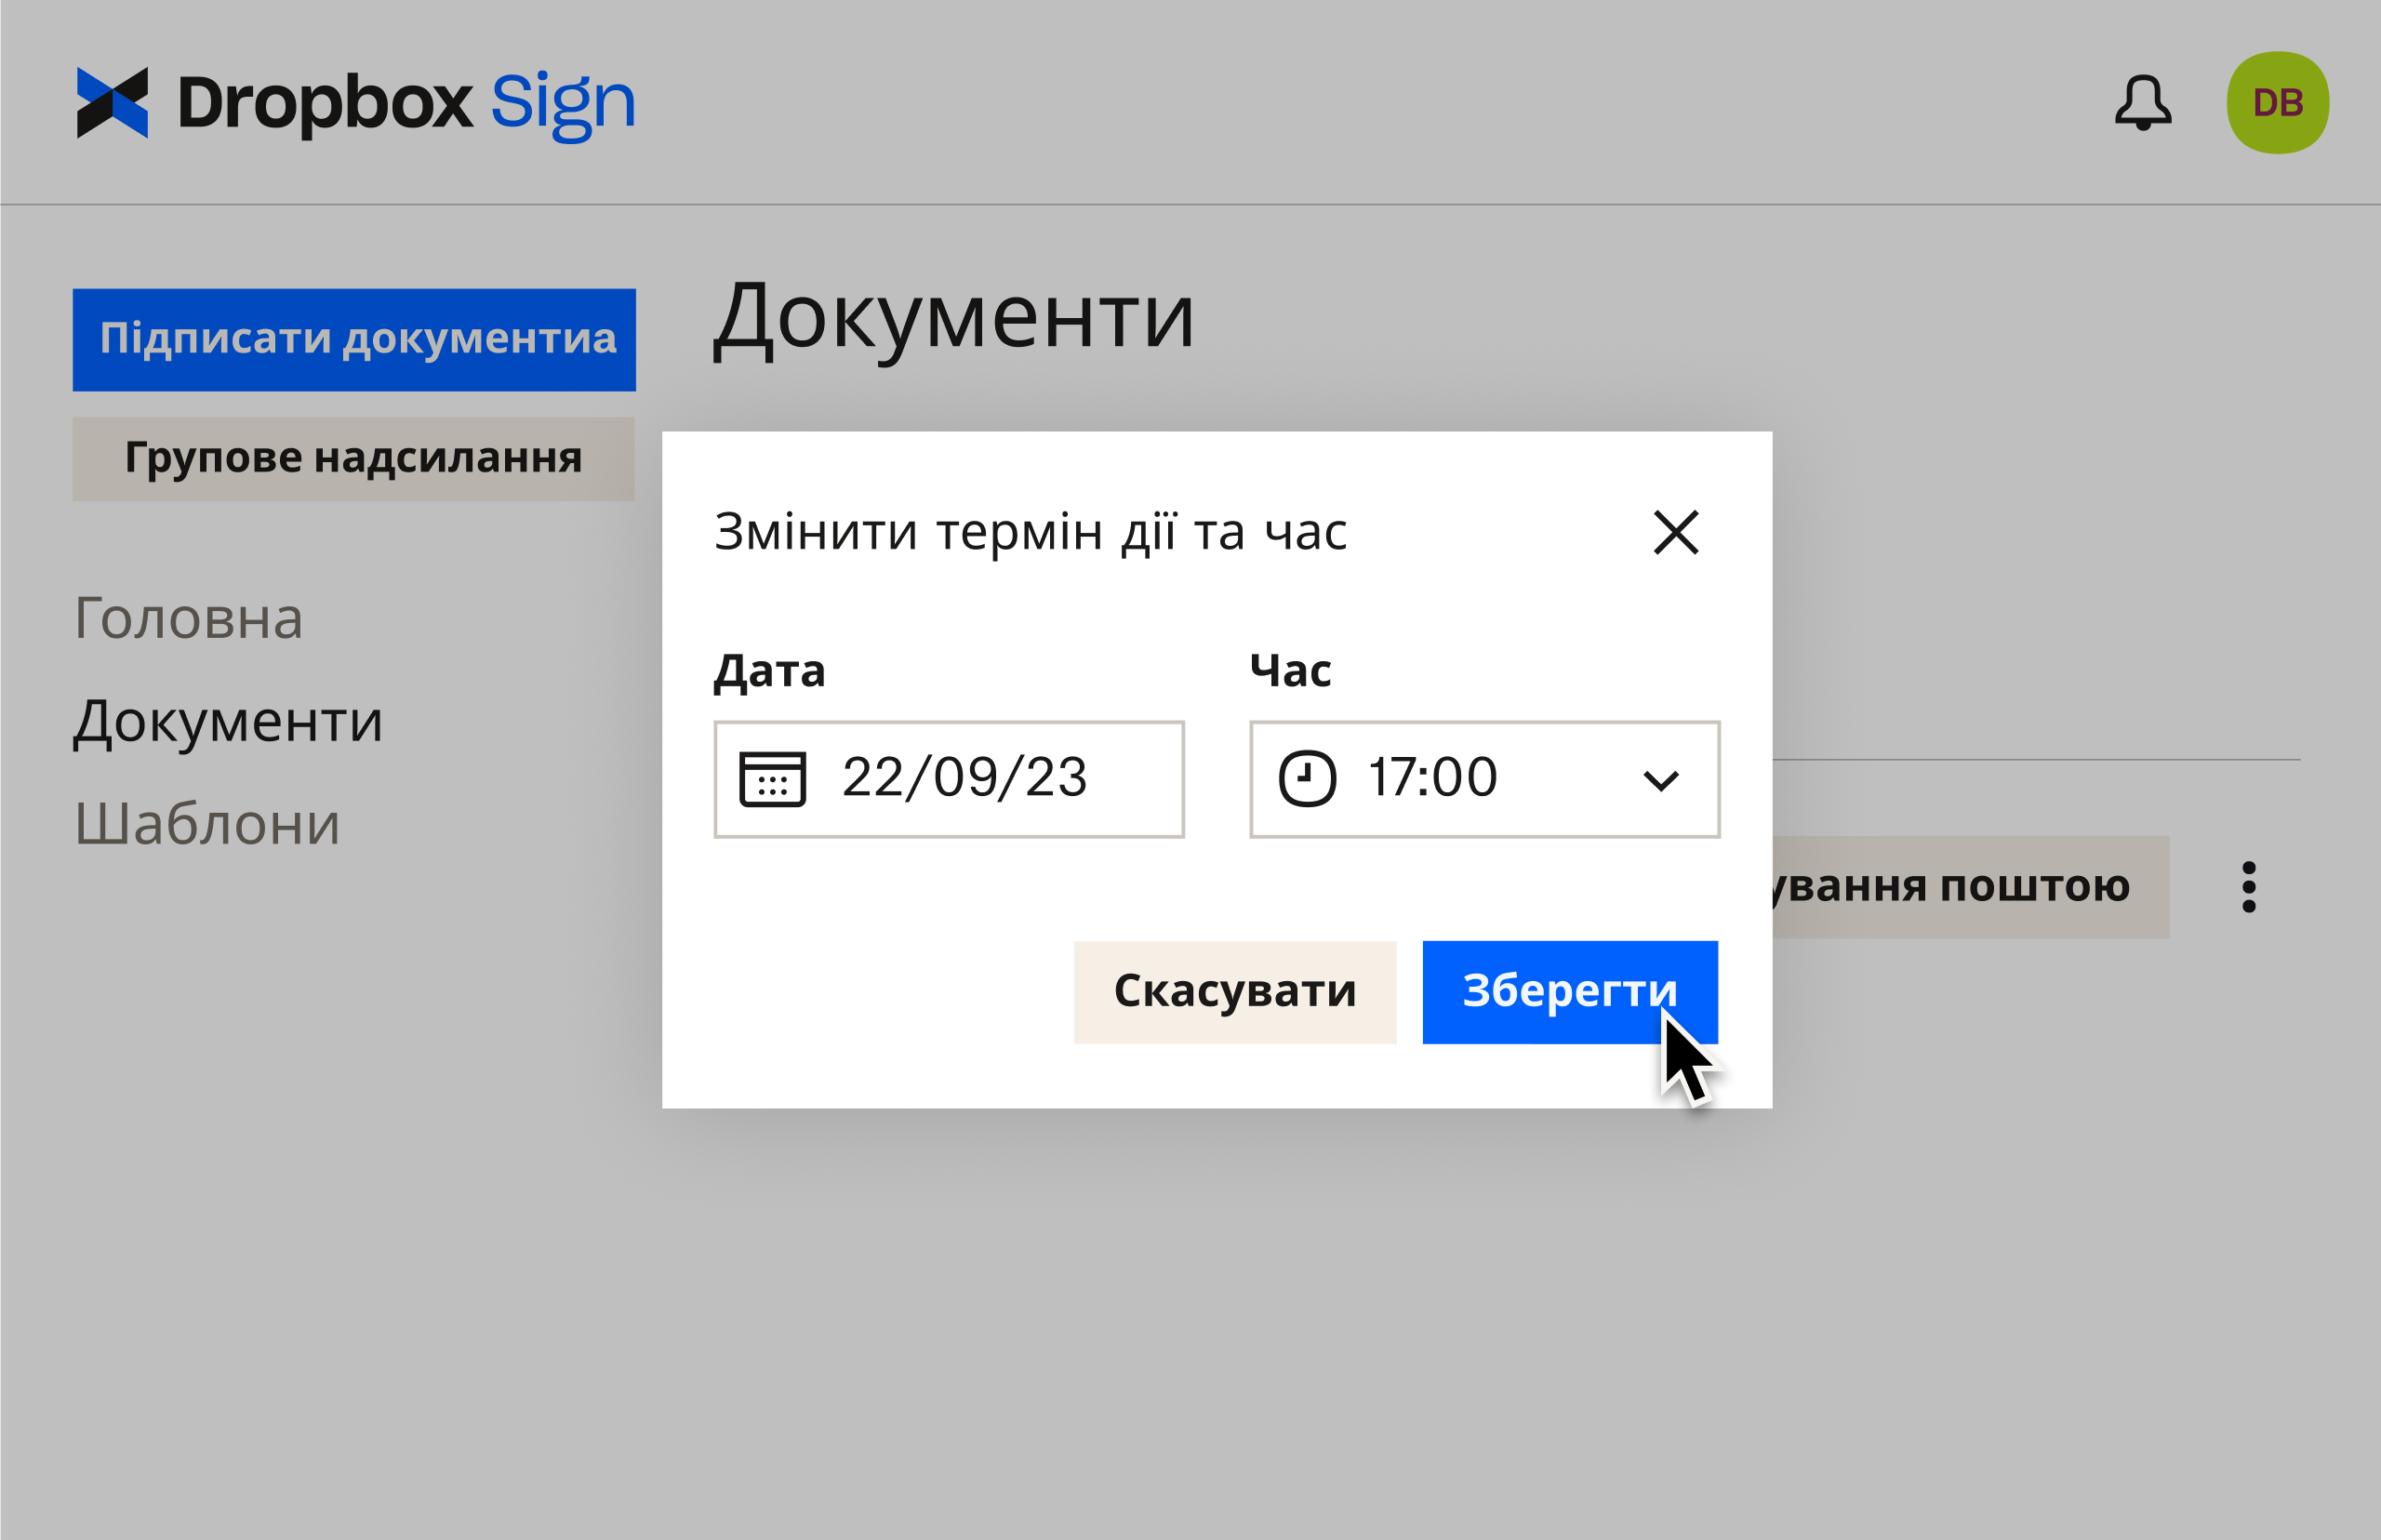 Інтерфейс Dropbox Sign демонструє, як редагувати терміни дії після надсилання документа на підпис